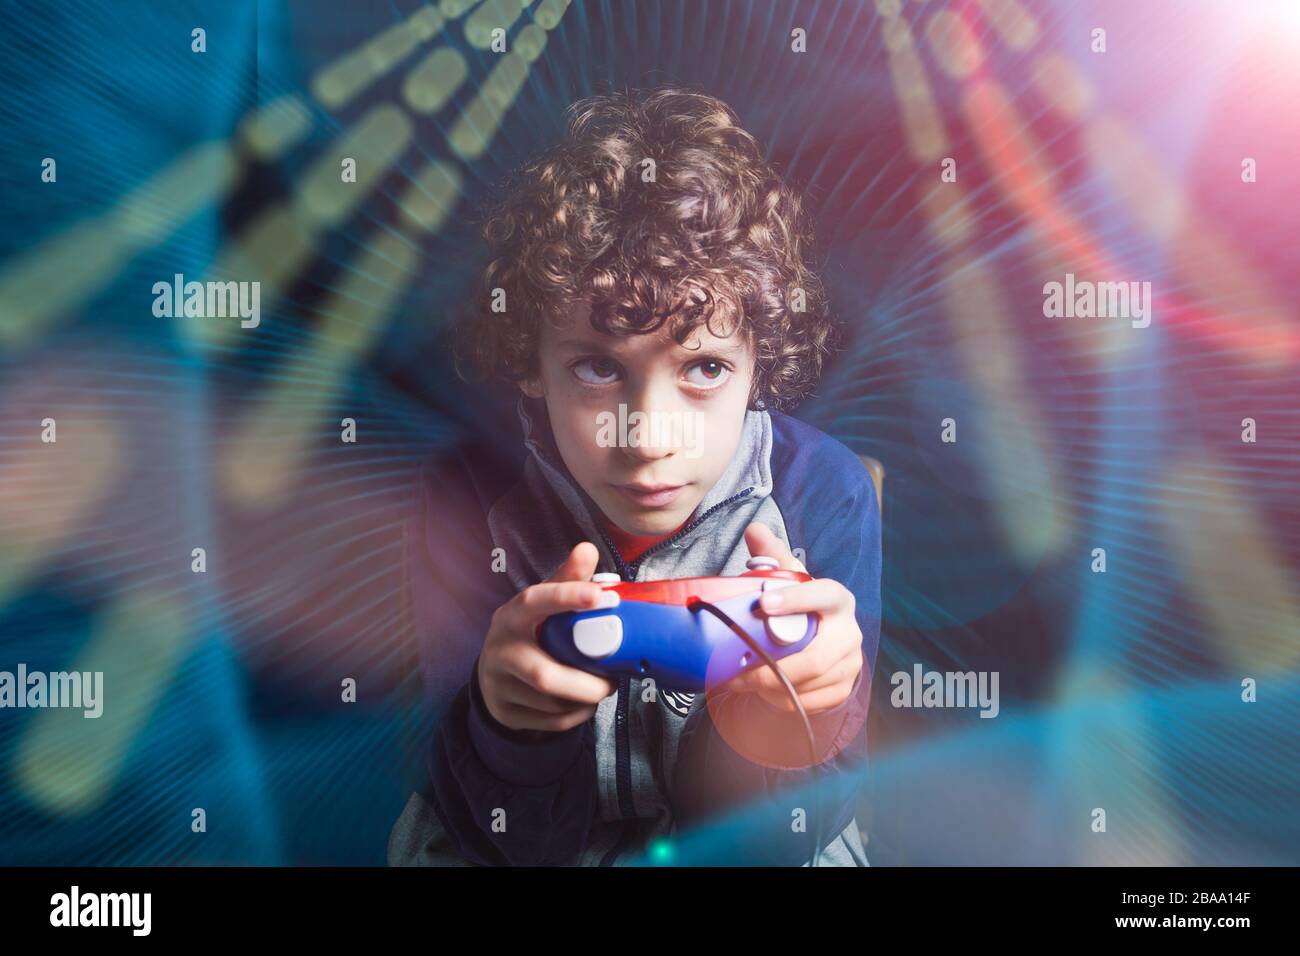 Gamer Kid. 7-8 Jahre altes Kind, das einen Konsolenspiel-Controller hält, das ein Videospiel in einem computergrafischen Licht-Kompositions-Ambient spielt. Studio gedreht. Ga Stockfoto